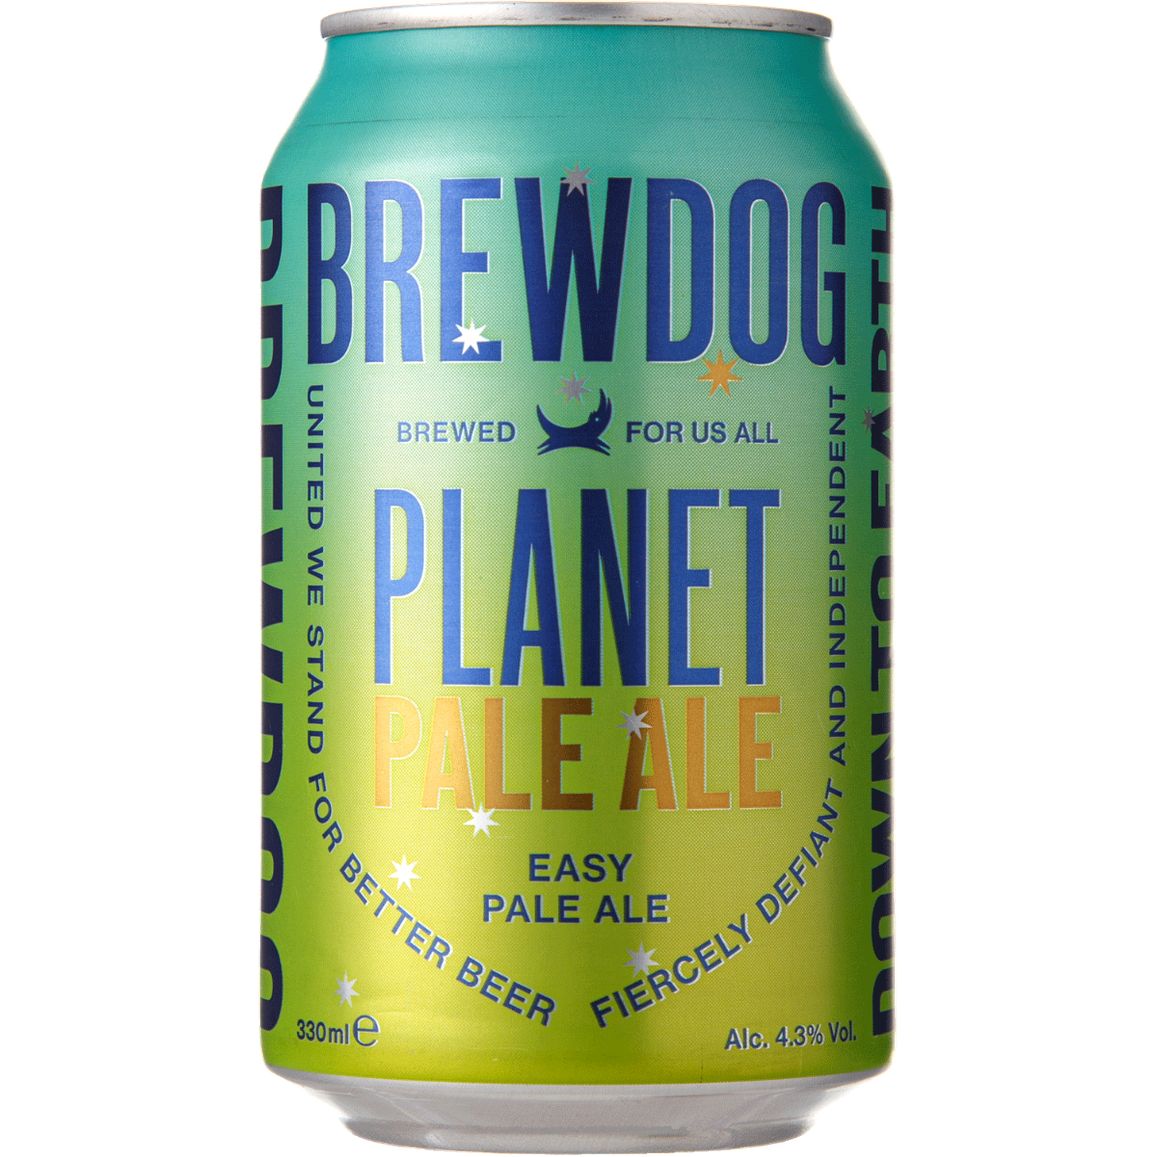 Пиво BrewDog Planet Pale Ale светлое 4.3% 0.33 л ж/б - фото 1